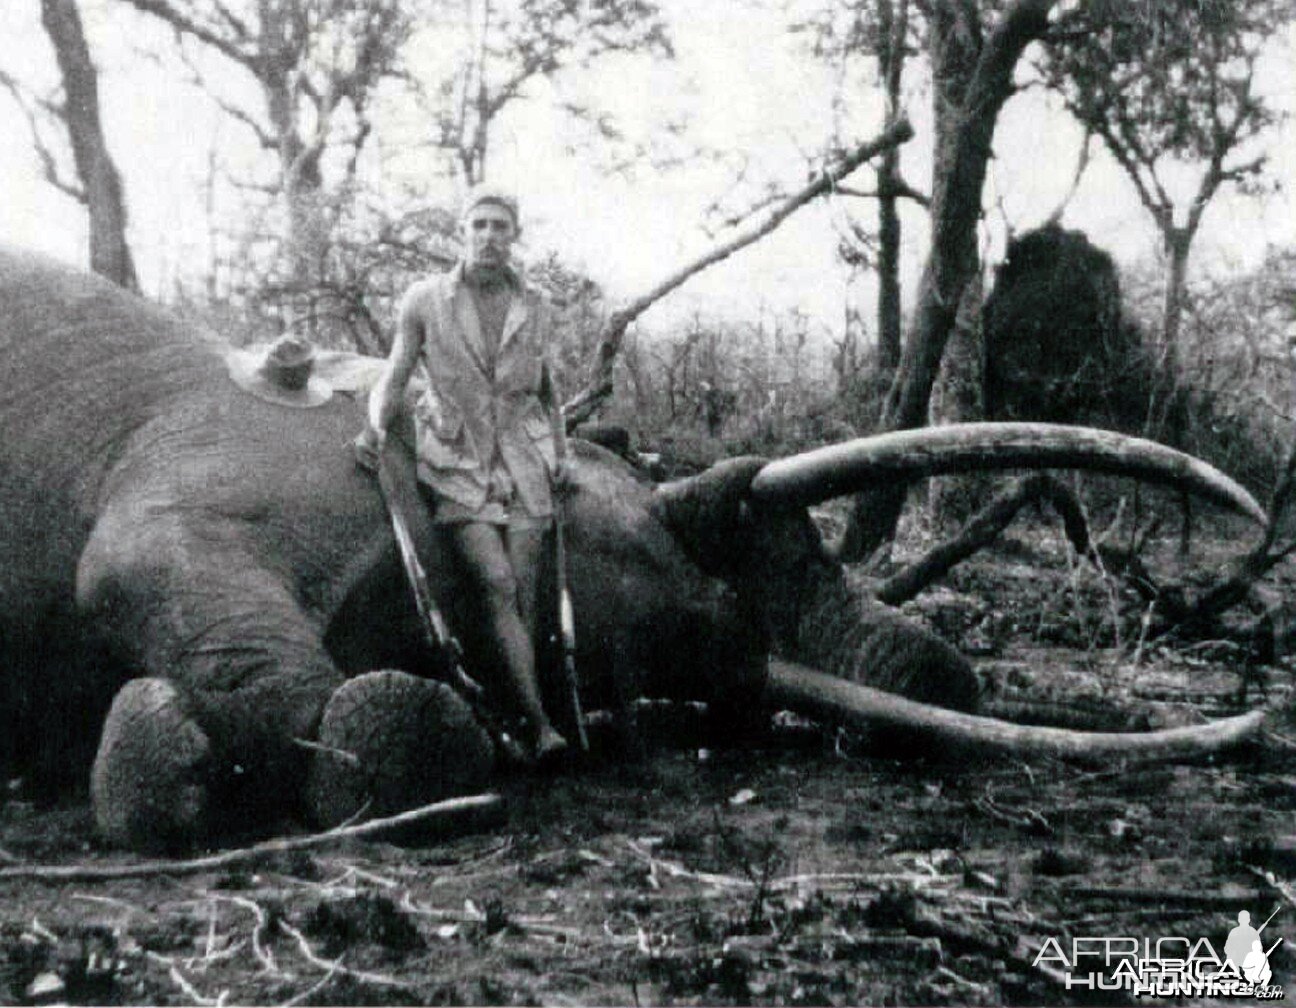 Elephant with Brian Nicholson (1931 - 2010)